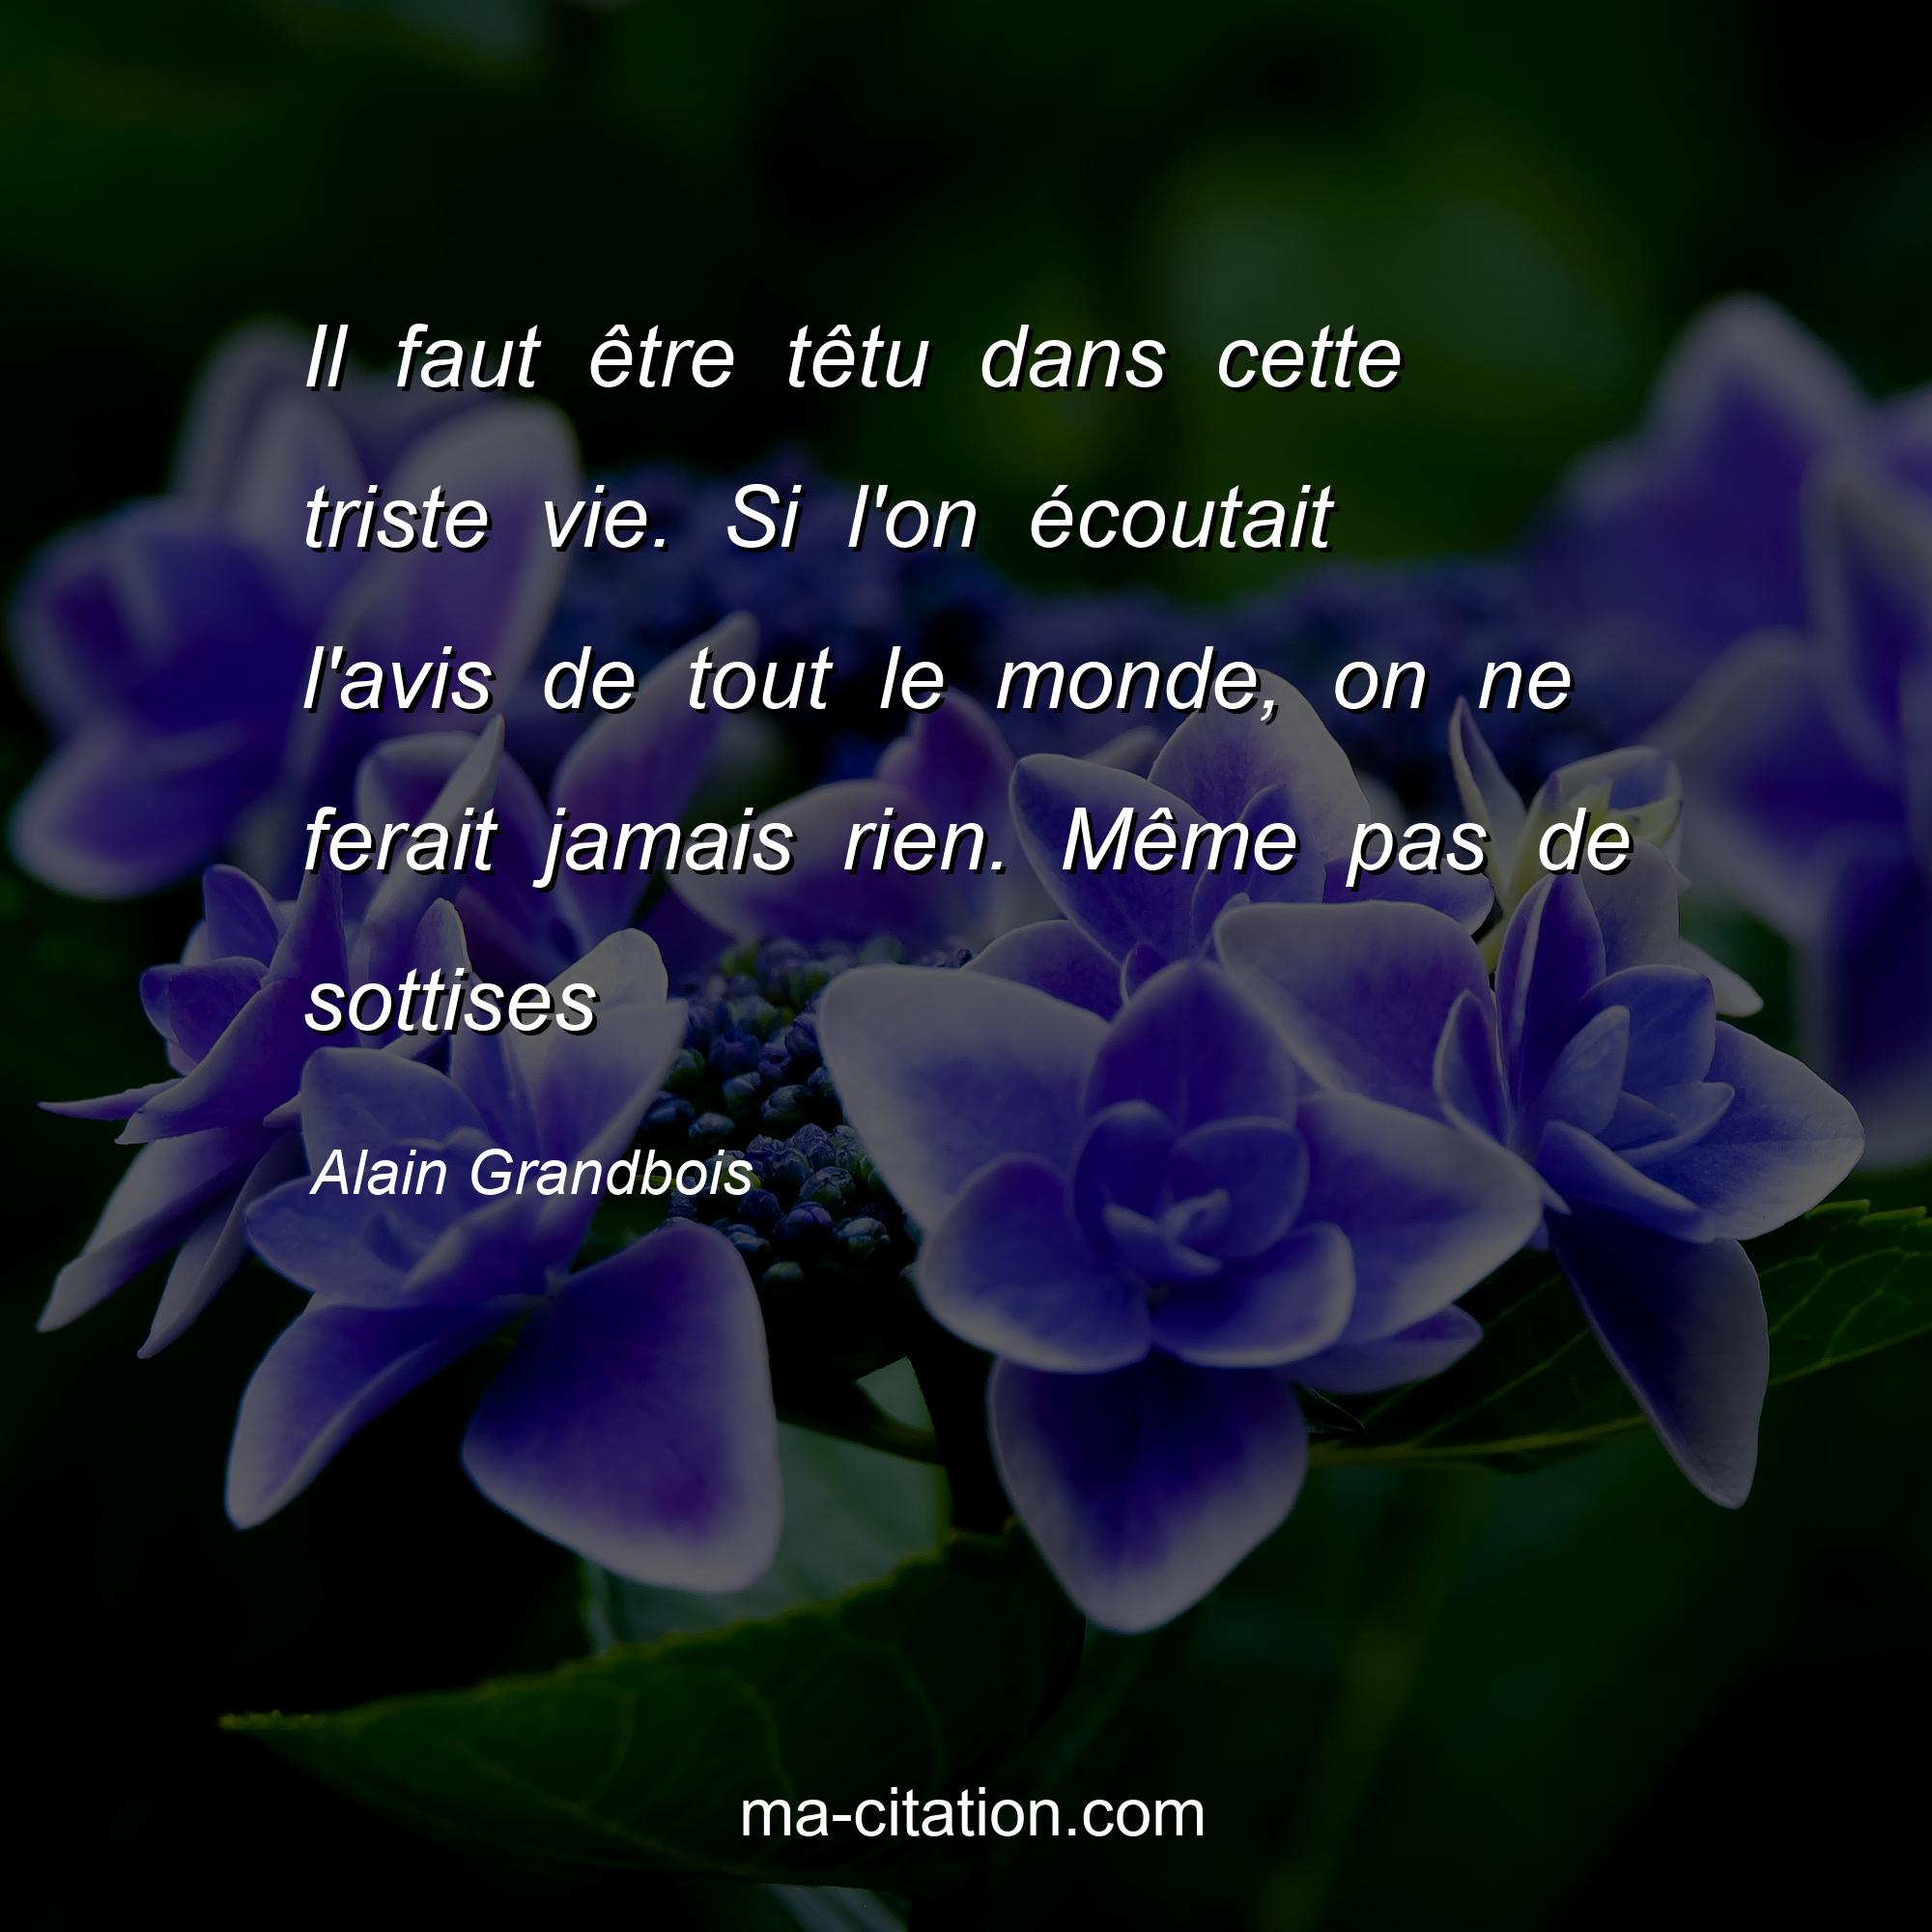 Alain Grandbois : Il faut être têtu dans cette triste vie. Si l'on écoutait l'avis de tout le monde, on ne ferait jamais rien. Même pas de sottises